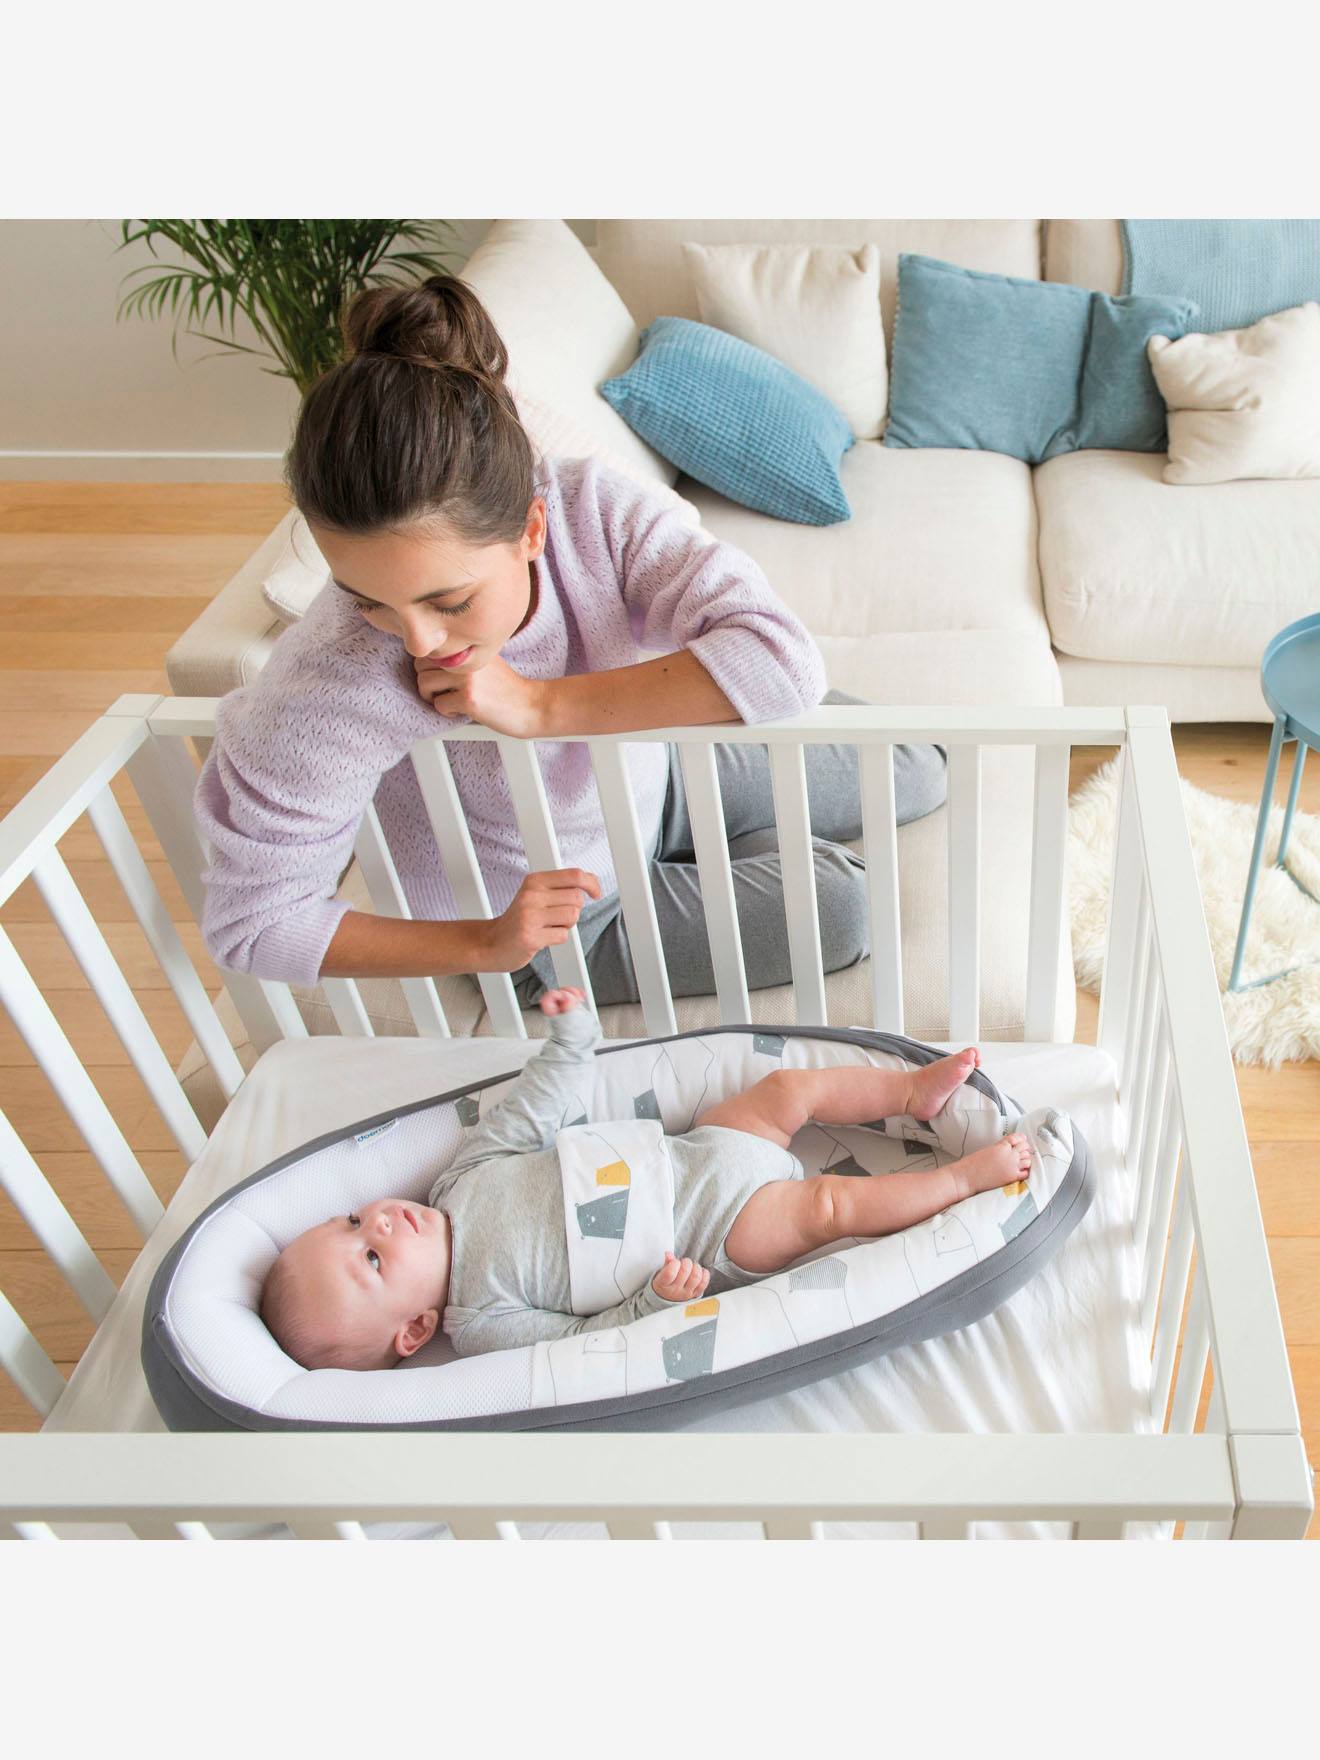 Le réducteur de lit pour bébé est-il dangereux ? 